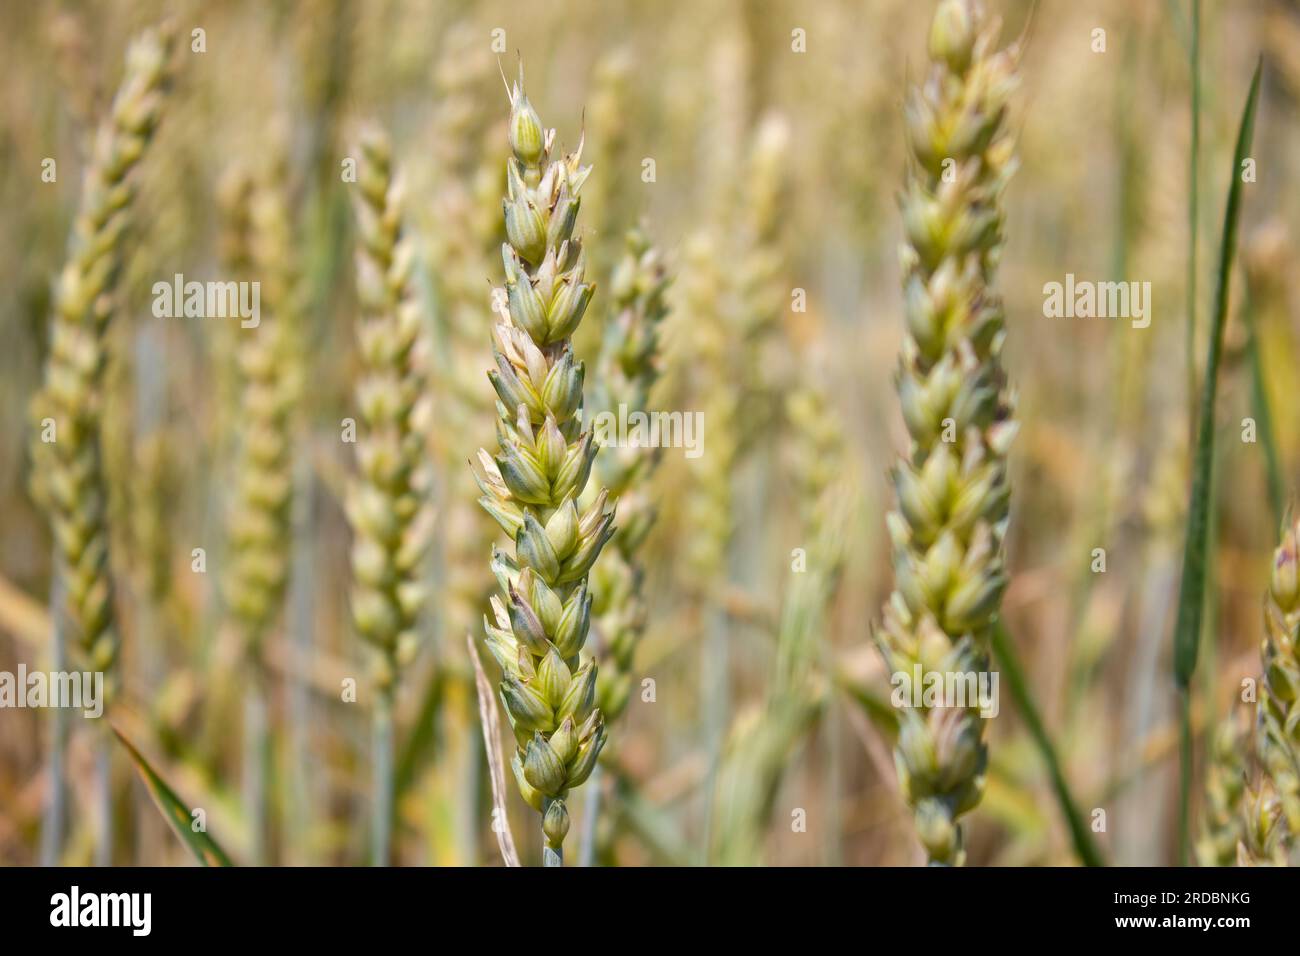 Primi piani delle orecchie Young Wheat. Orecchie di grano in natura su uno sfondo morbido e sfocato. Campo agricolo su cui coltivano cereali immaturi, frumento. Foto Stock